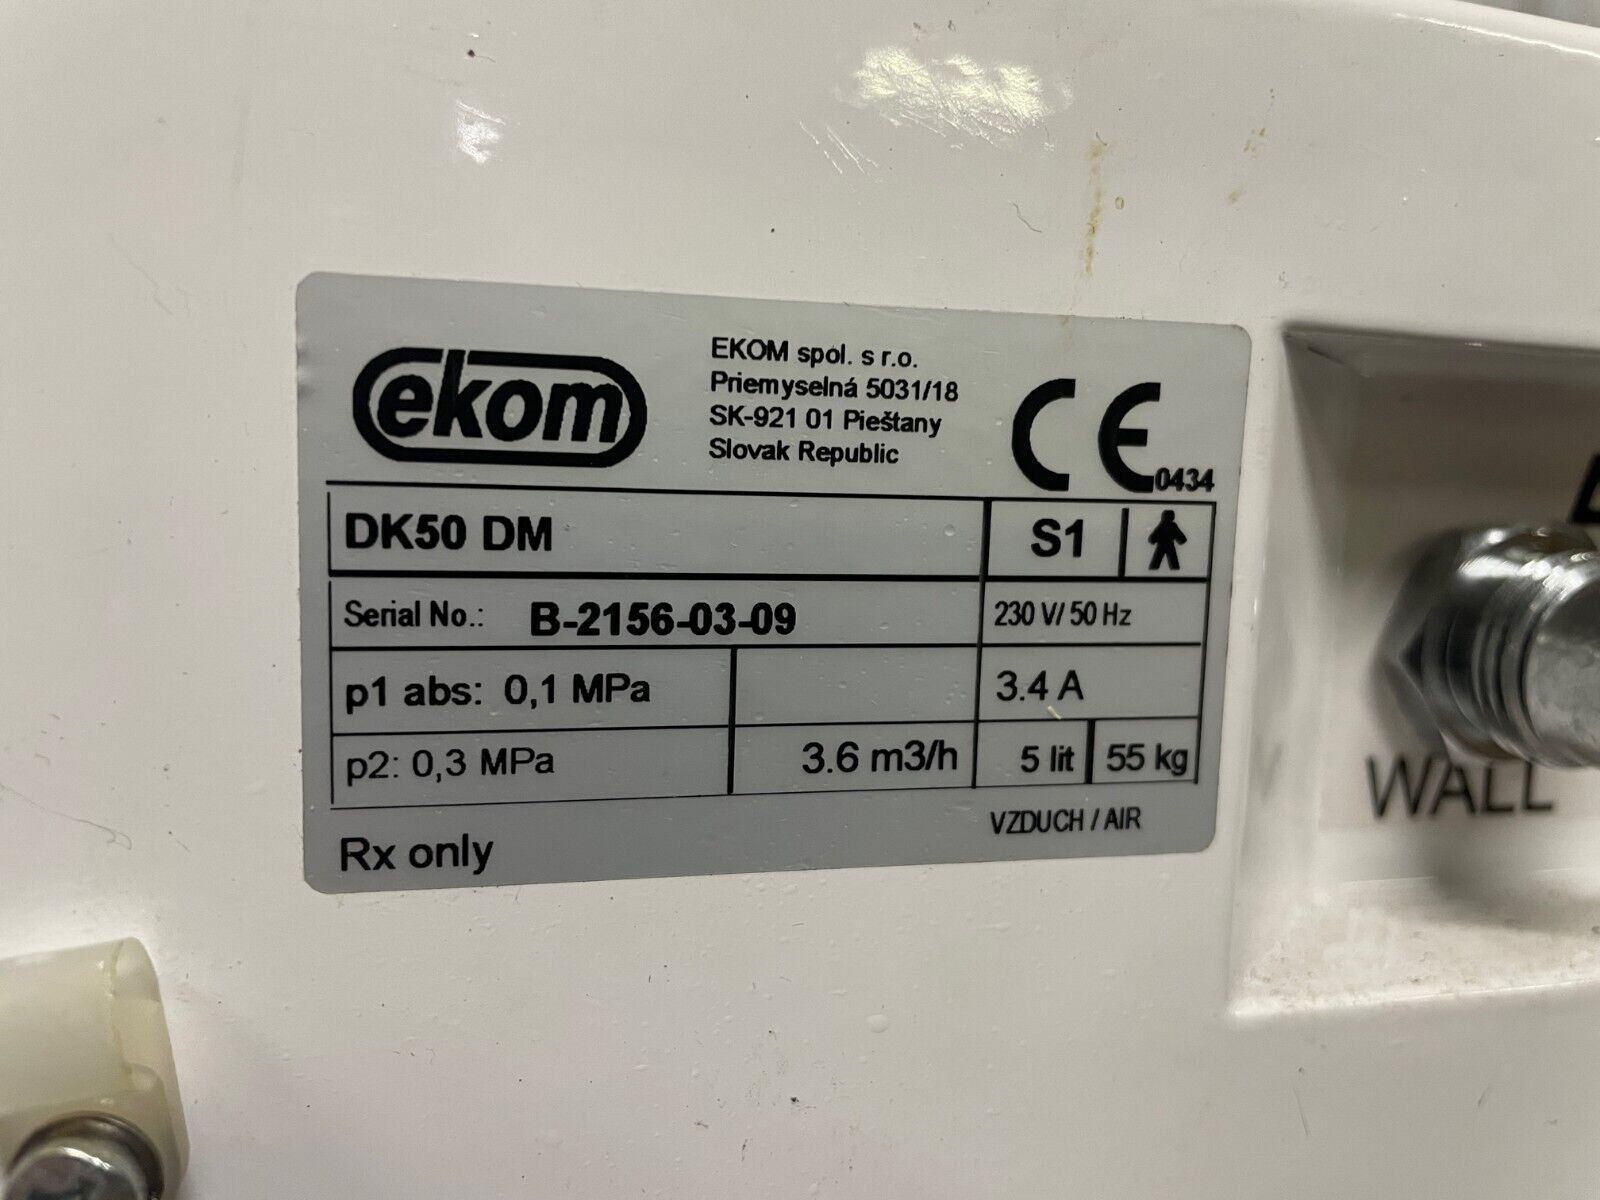 Ekom Event DK50 DM Ventilator Compressor, 230V